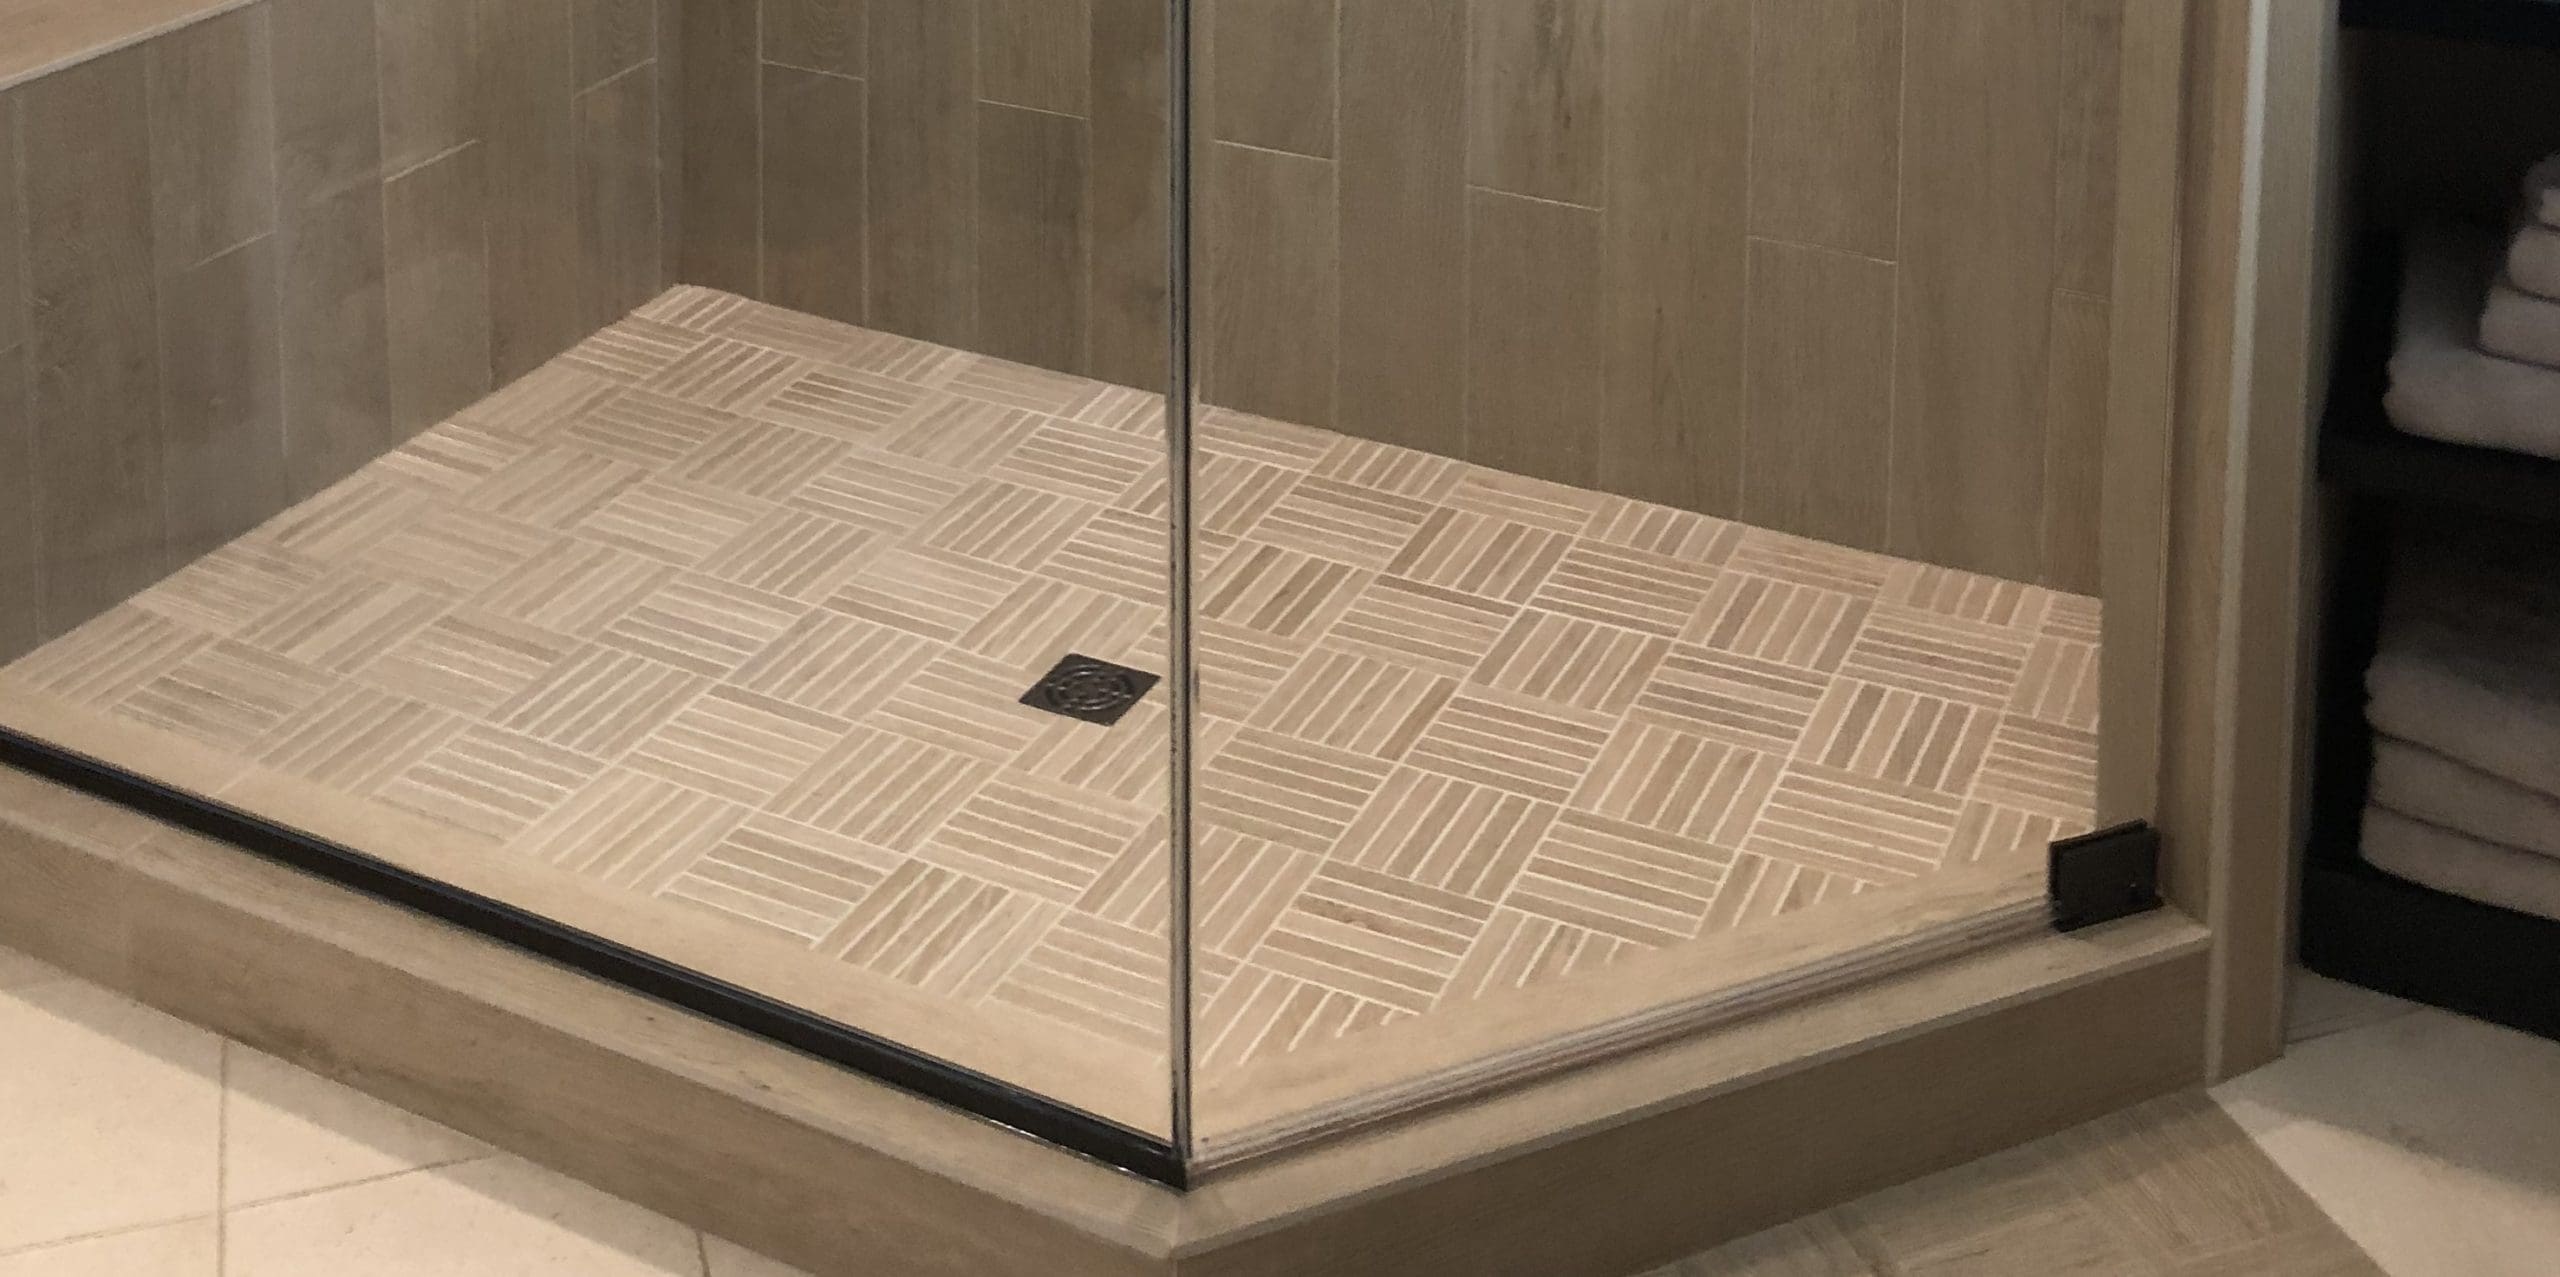 Prefabricated Unit Or A Tiled Shower, Tile Shower Floor Pan Kit